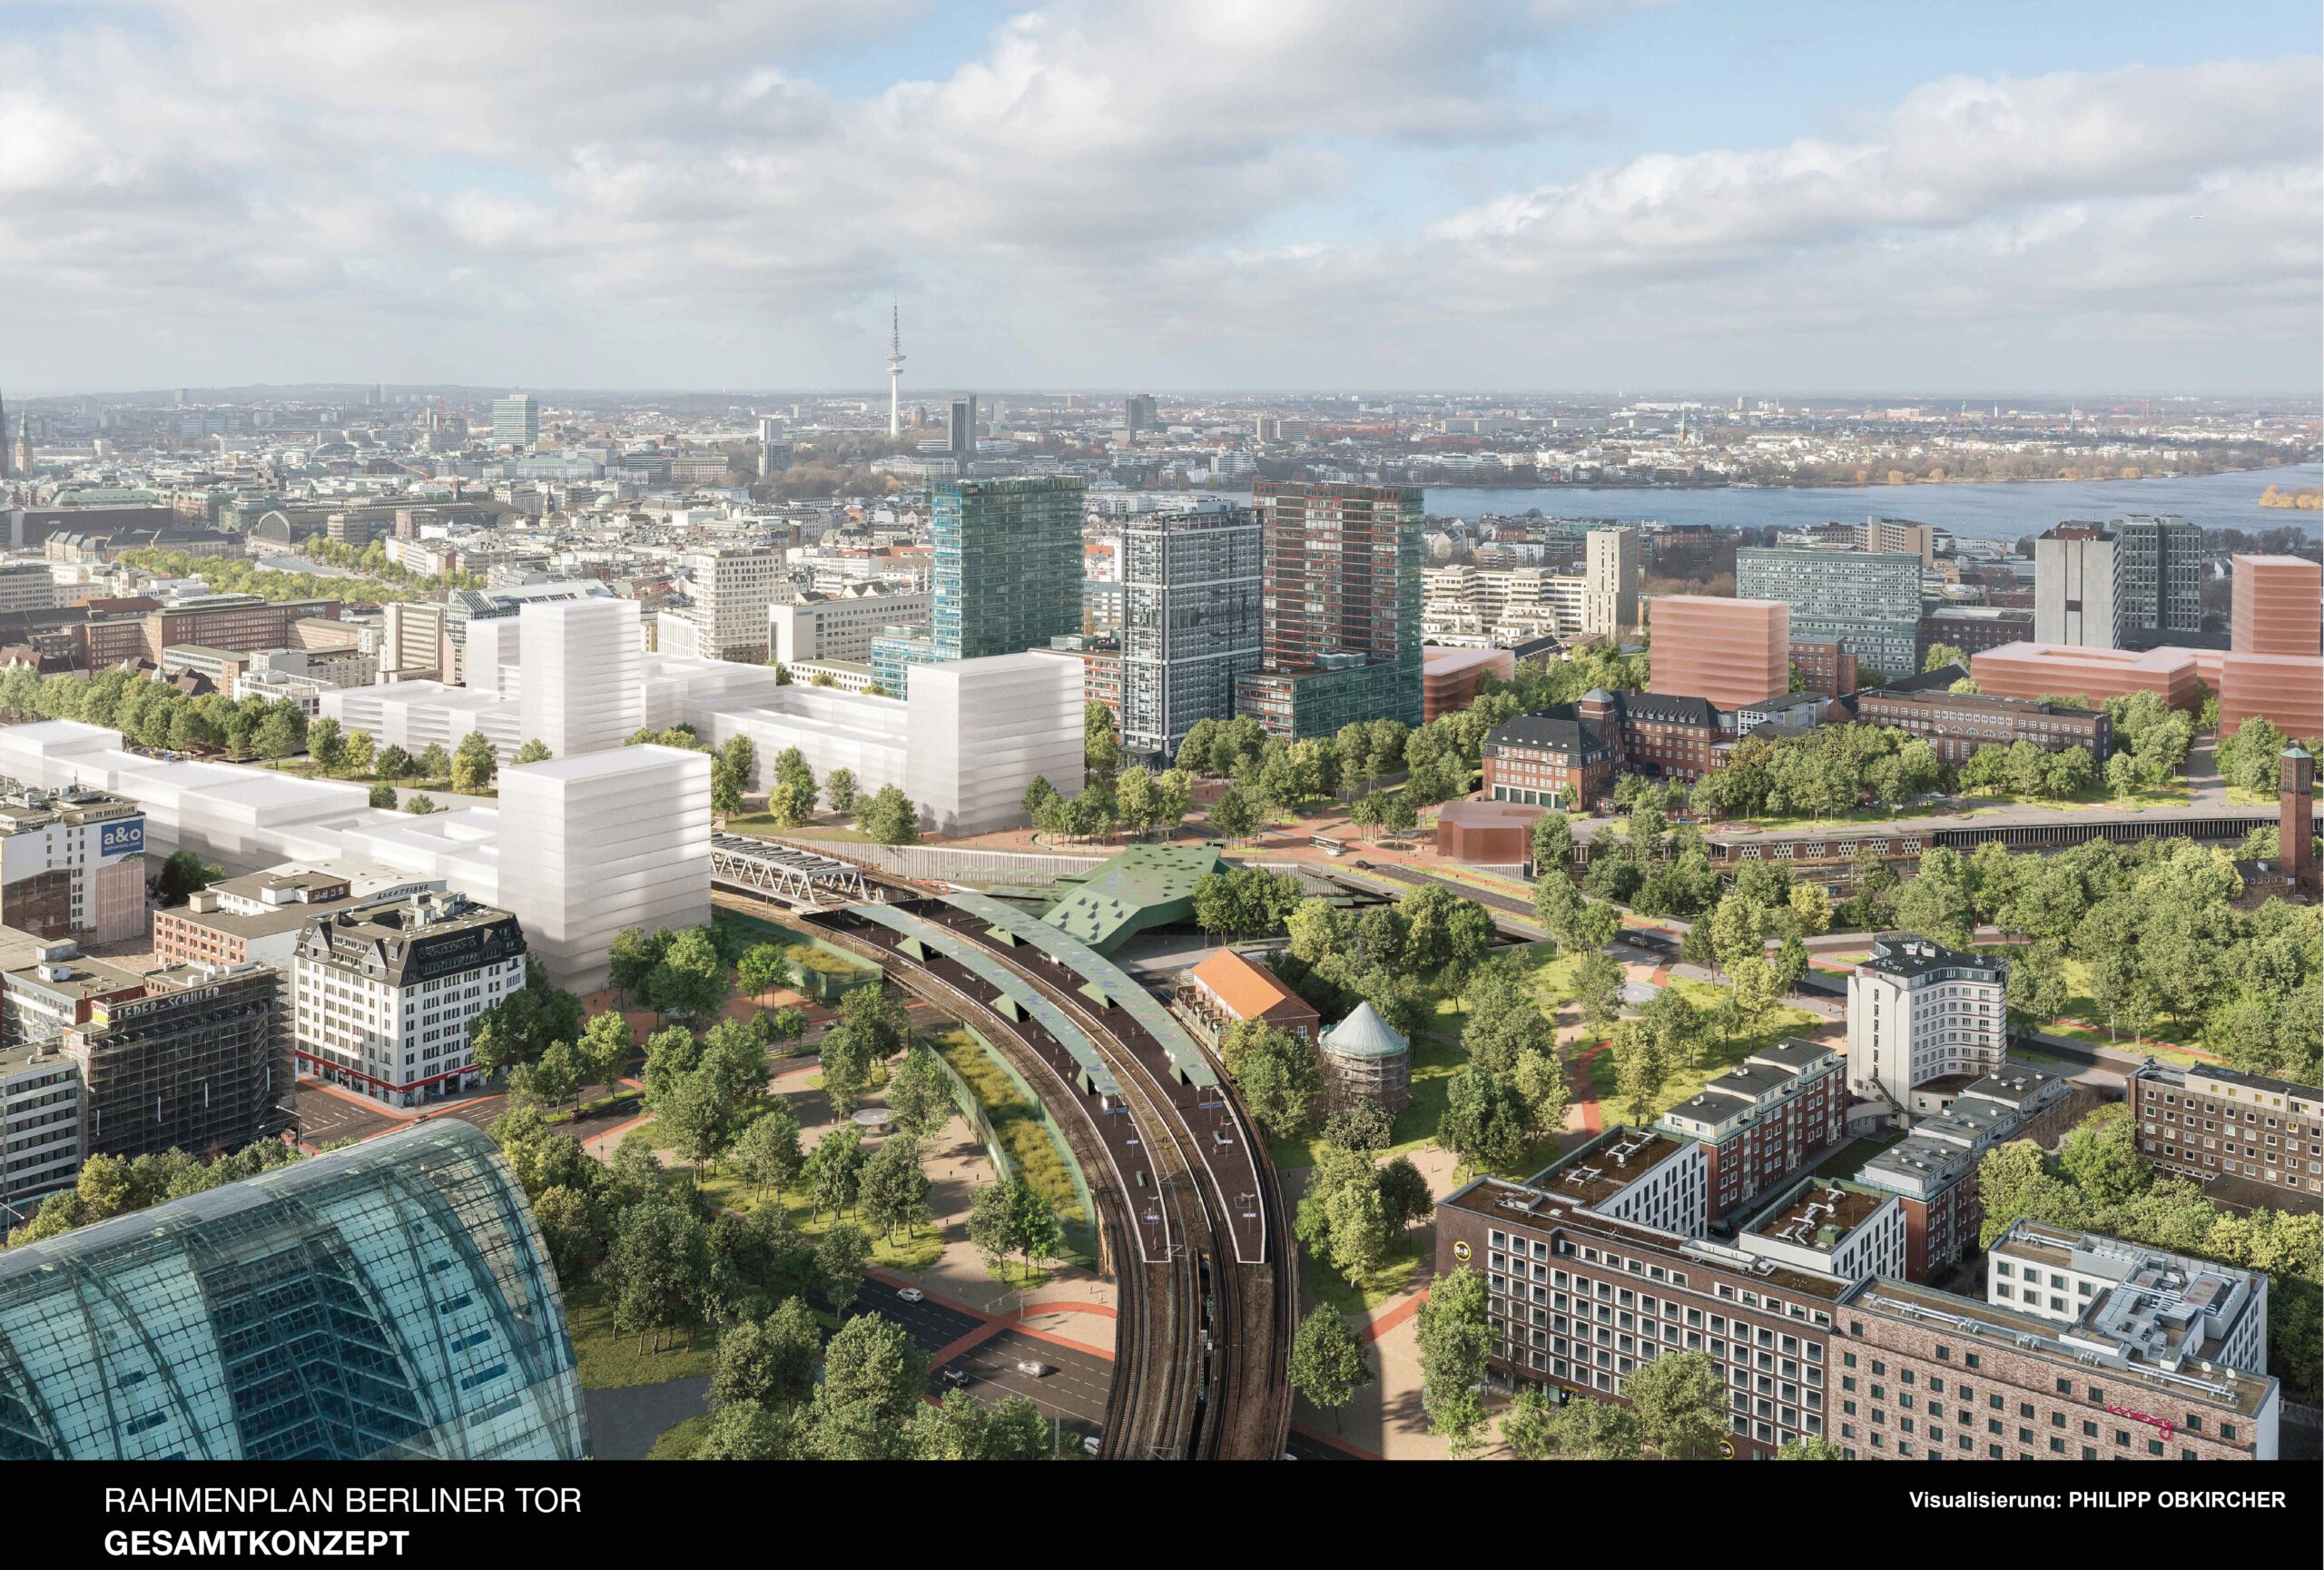 Viel Grün, neuer Bahnhof, neue Bauten: So könnte das Berliner Tor mal aussehen.